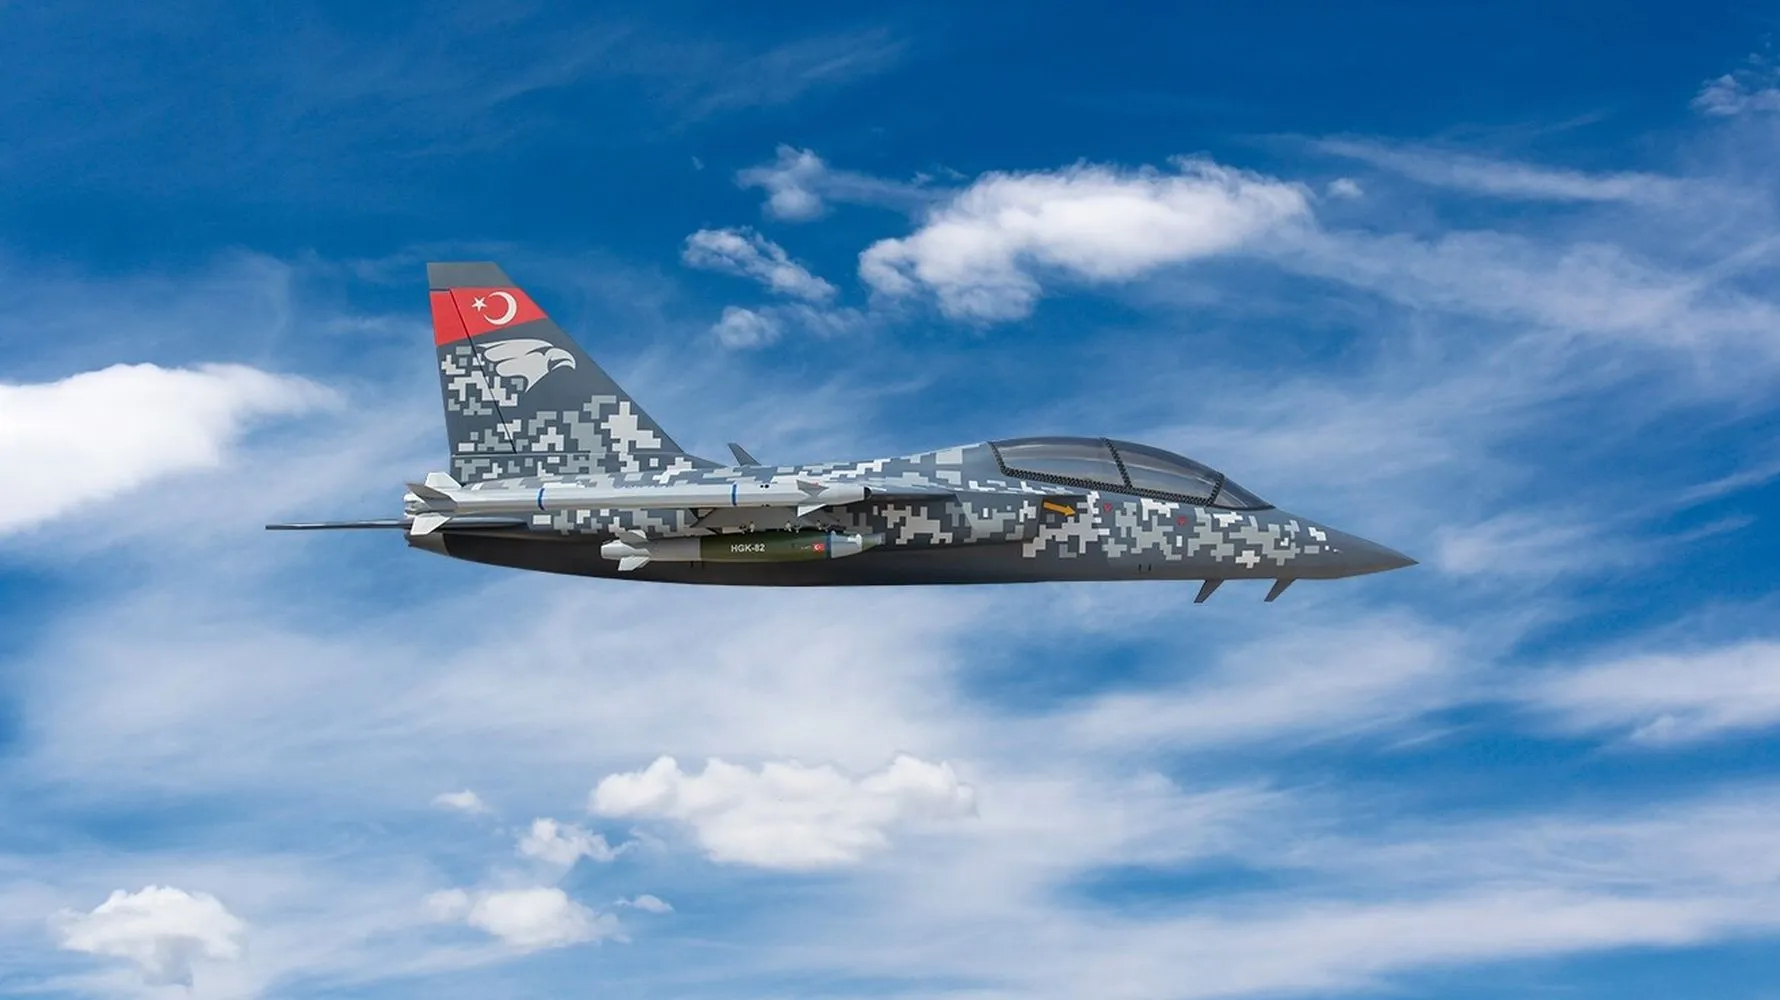 El avión de ataque ligero turco TAI Hürjet abandonó el hangar por primera vez - el avión se utilizará para el entrenamiento de pilotos de F-35 y TAI-TF-X